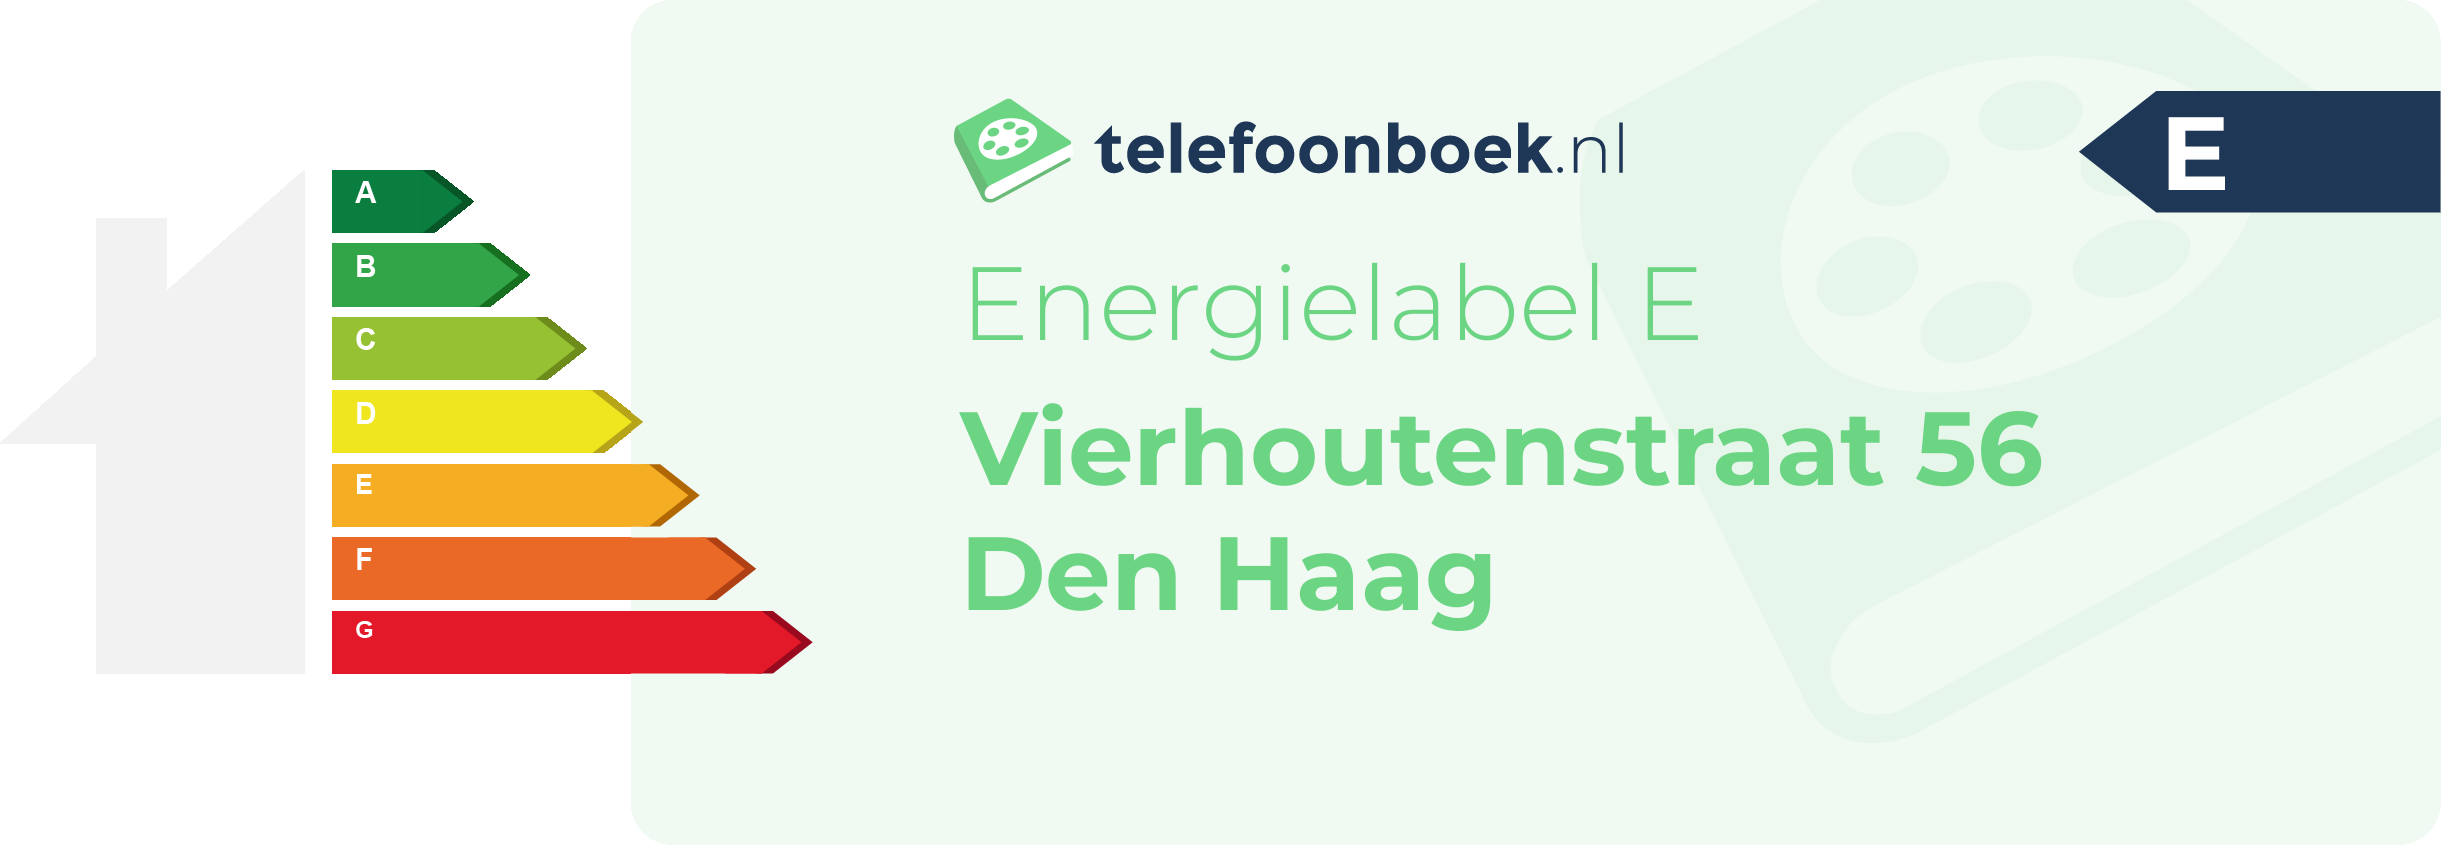 Energielabel Vierhoutenstraat 56 Den Haag